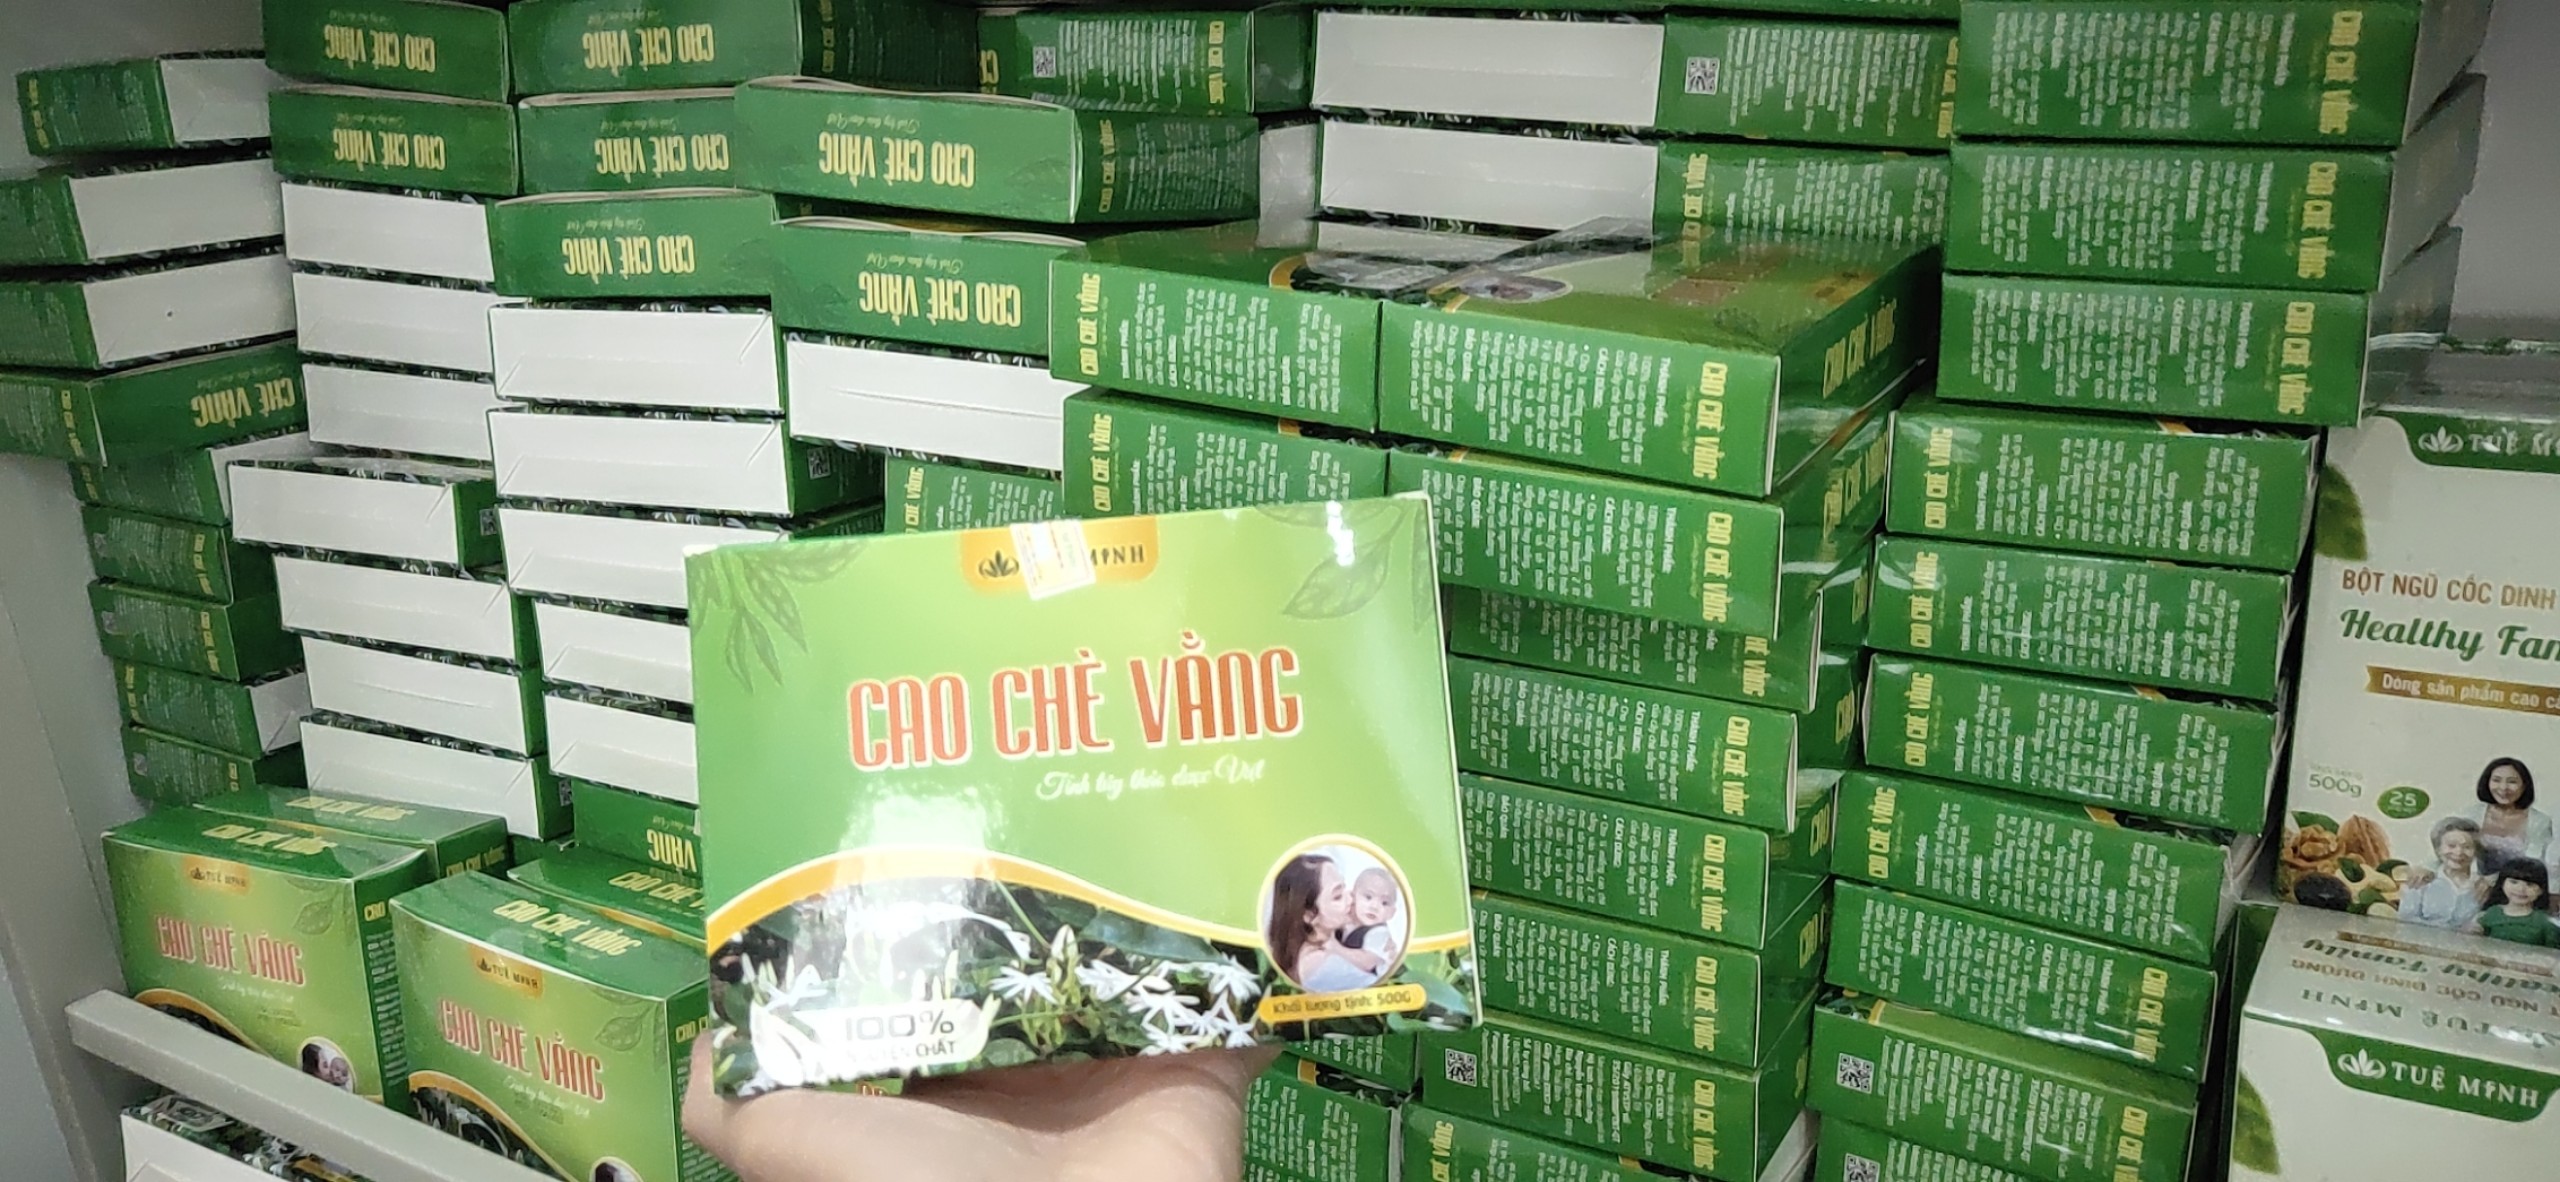 1 miếng (20g) Cao chè vằng sẻ Tuệ Minh hàng chuẩn sản xuất tại Quảng Trị